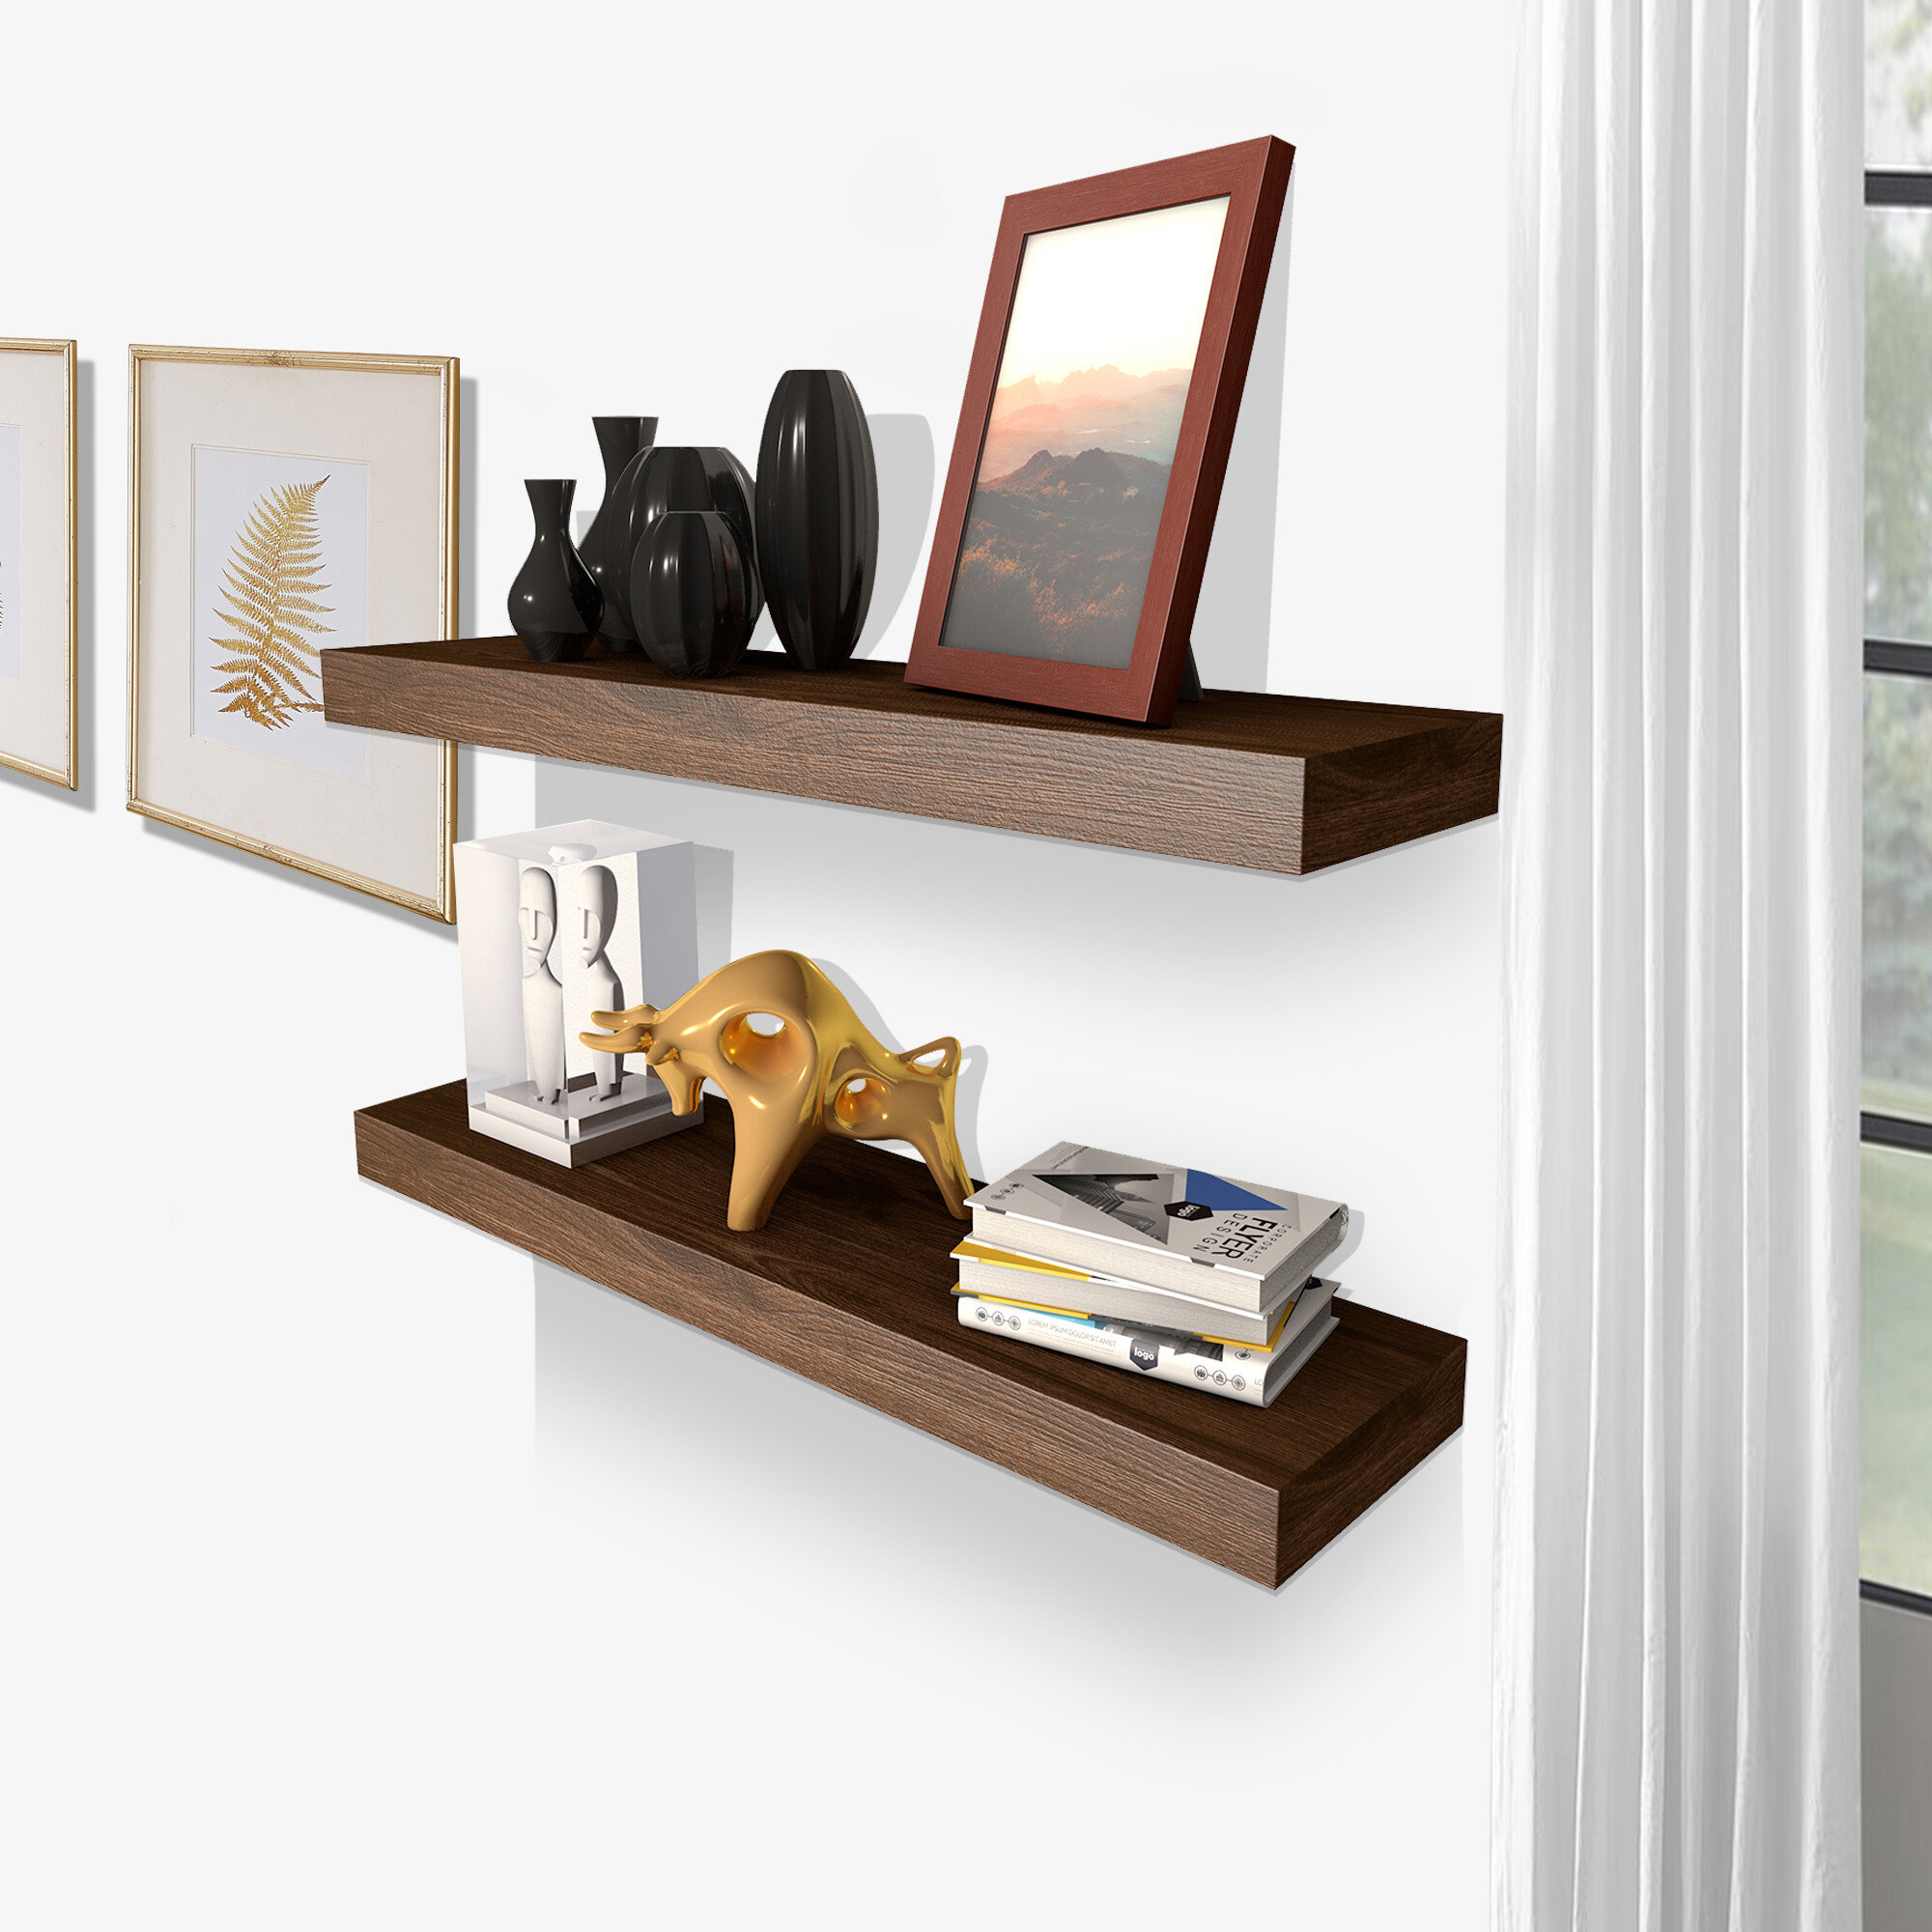 Wood Floating Shelves - Wall Shelves